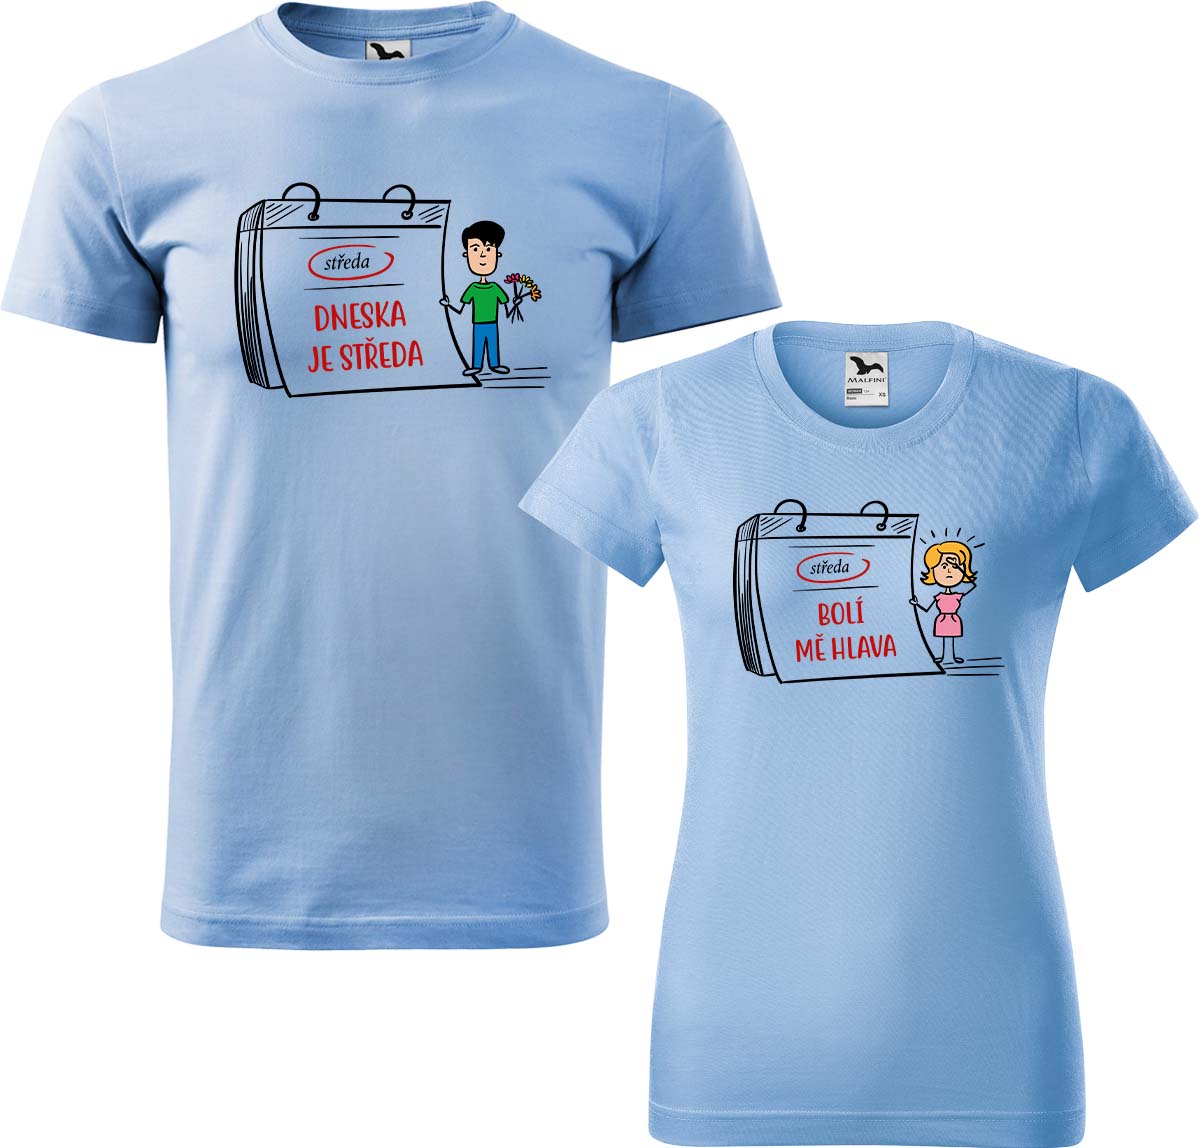 Trička pro páry - Dneska je středa Barva: Nebesky modrá (15), Velikost dámské tričko: XL, Velikost pánské tričko: XL